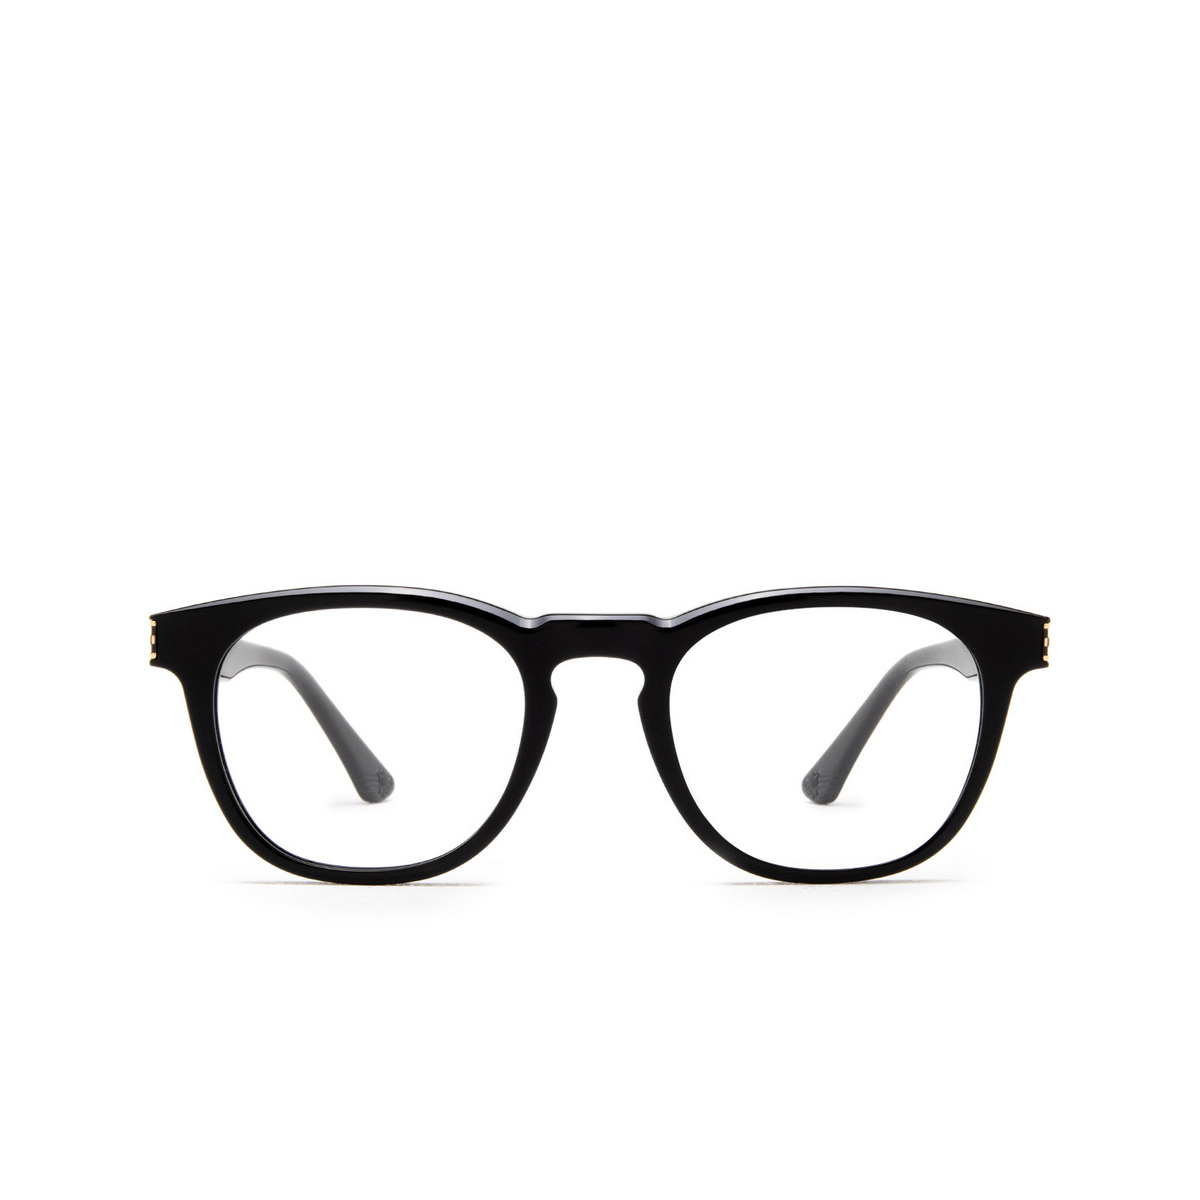 Police ORIGINS HERO 4 Eyeglasses 0700 Black - front view